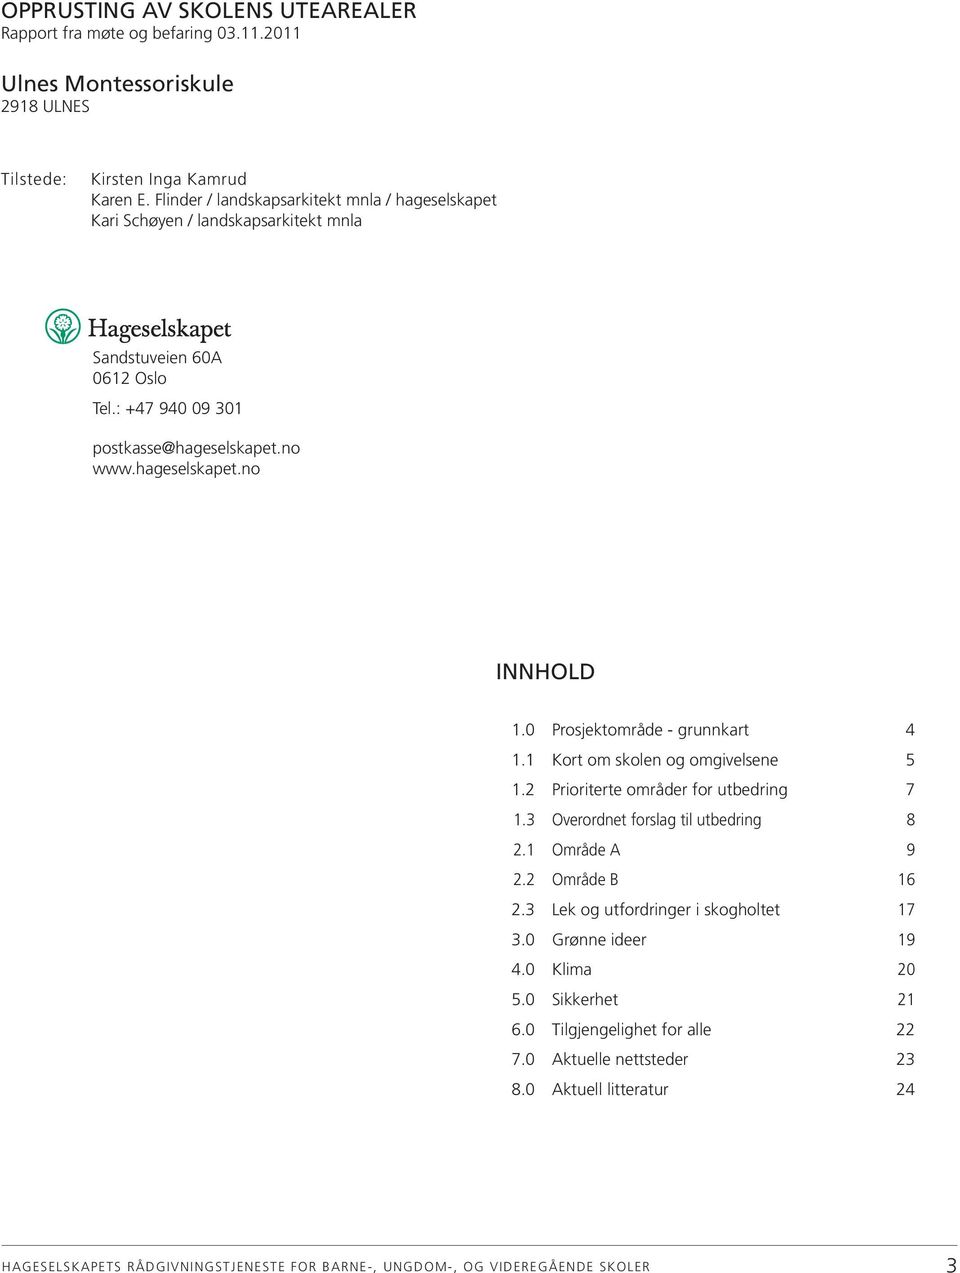 hageselskapet.no INNHOLD 1.0 Prosjektområde - grunnkart 4 1.1 Kort om skolen og omgivelsene 5 1.2 Prioriterte områder for utbedring 7 1.